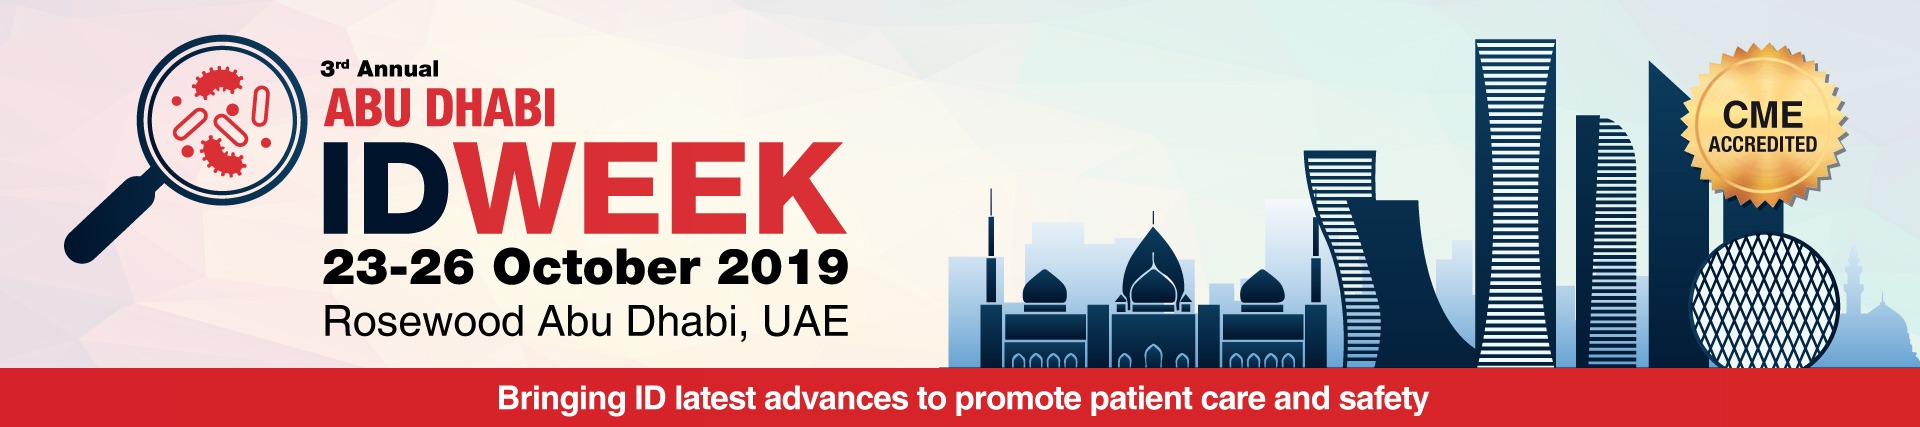 Abu Dhabi ID Week 2019 - Coming Soon in UAE